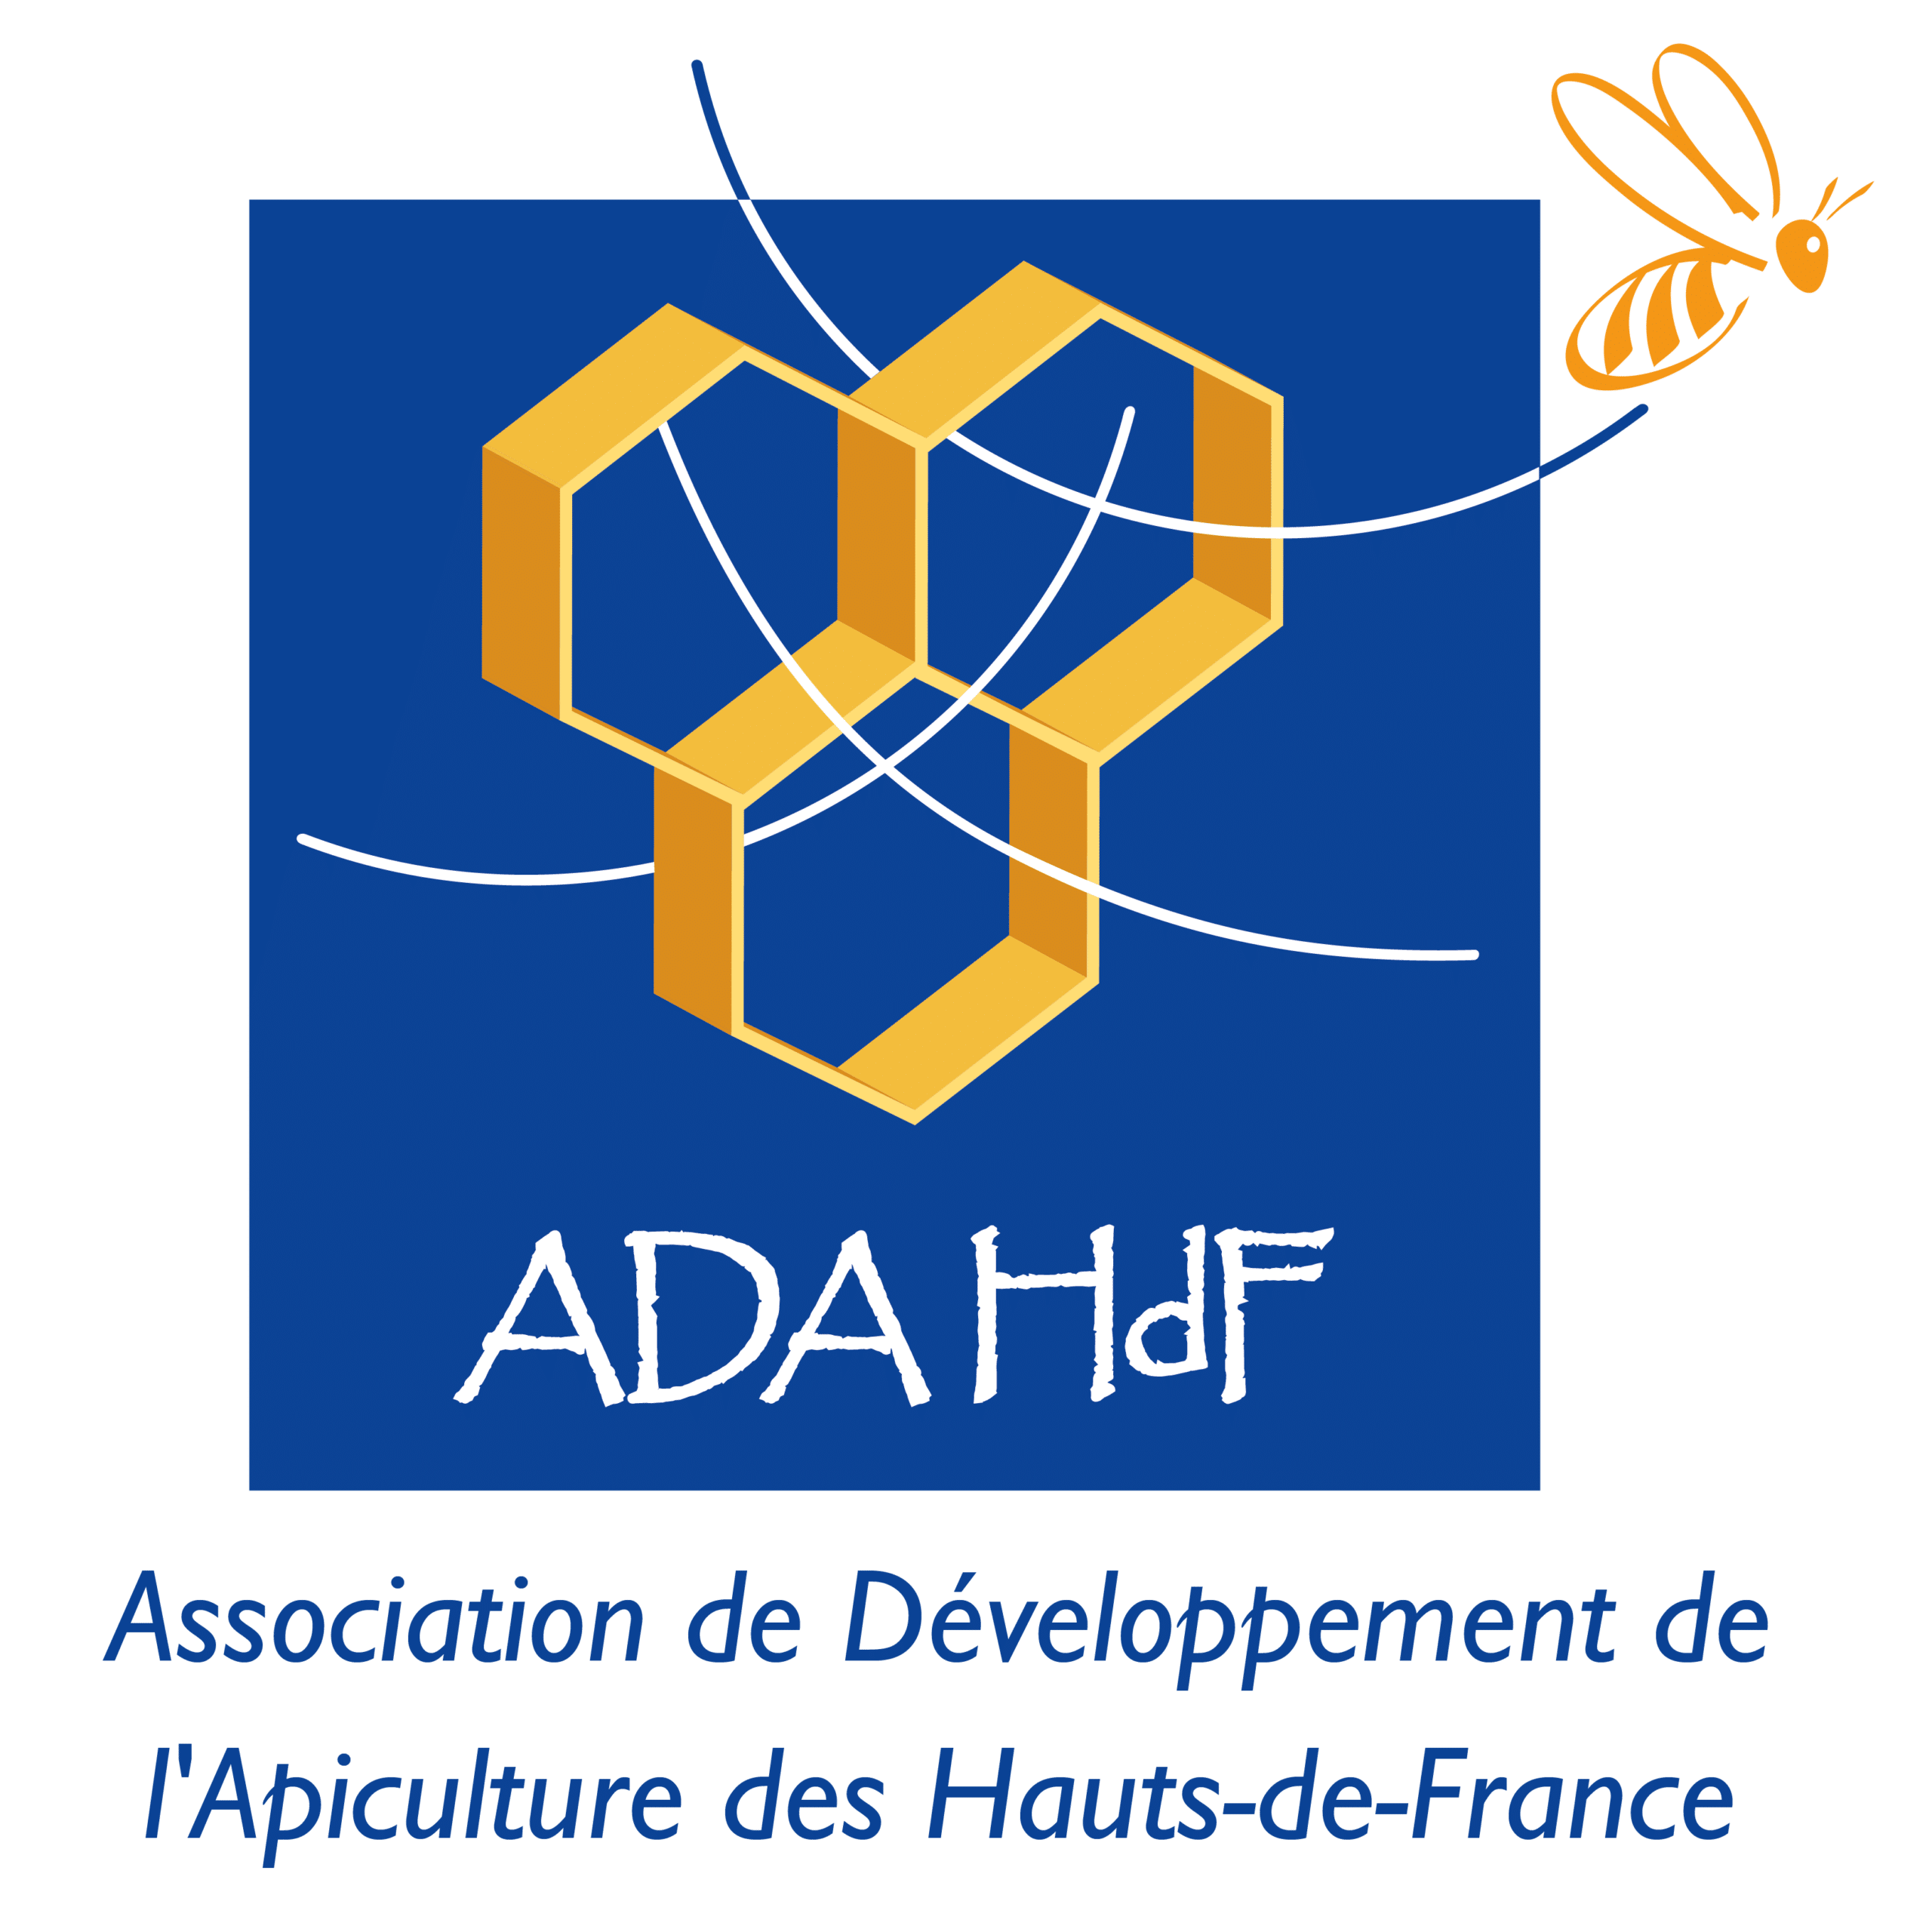 L'Association de Développement de l'Apiculture des Hauts-de-France